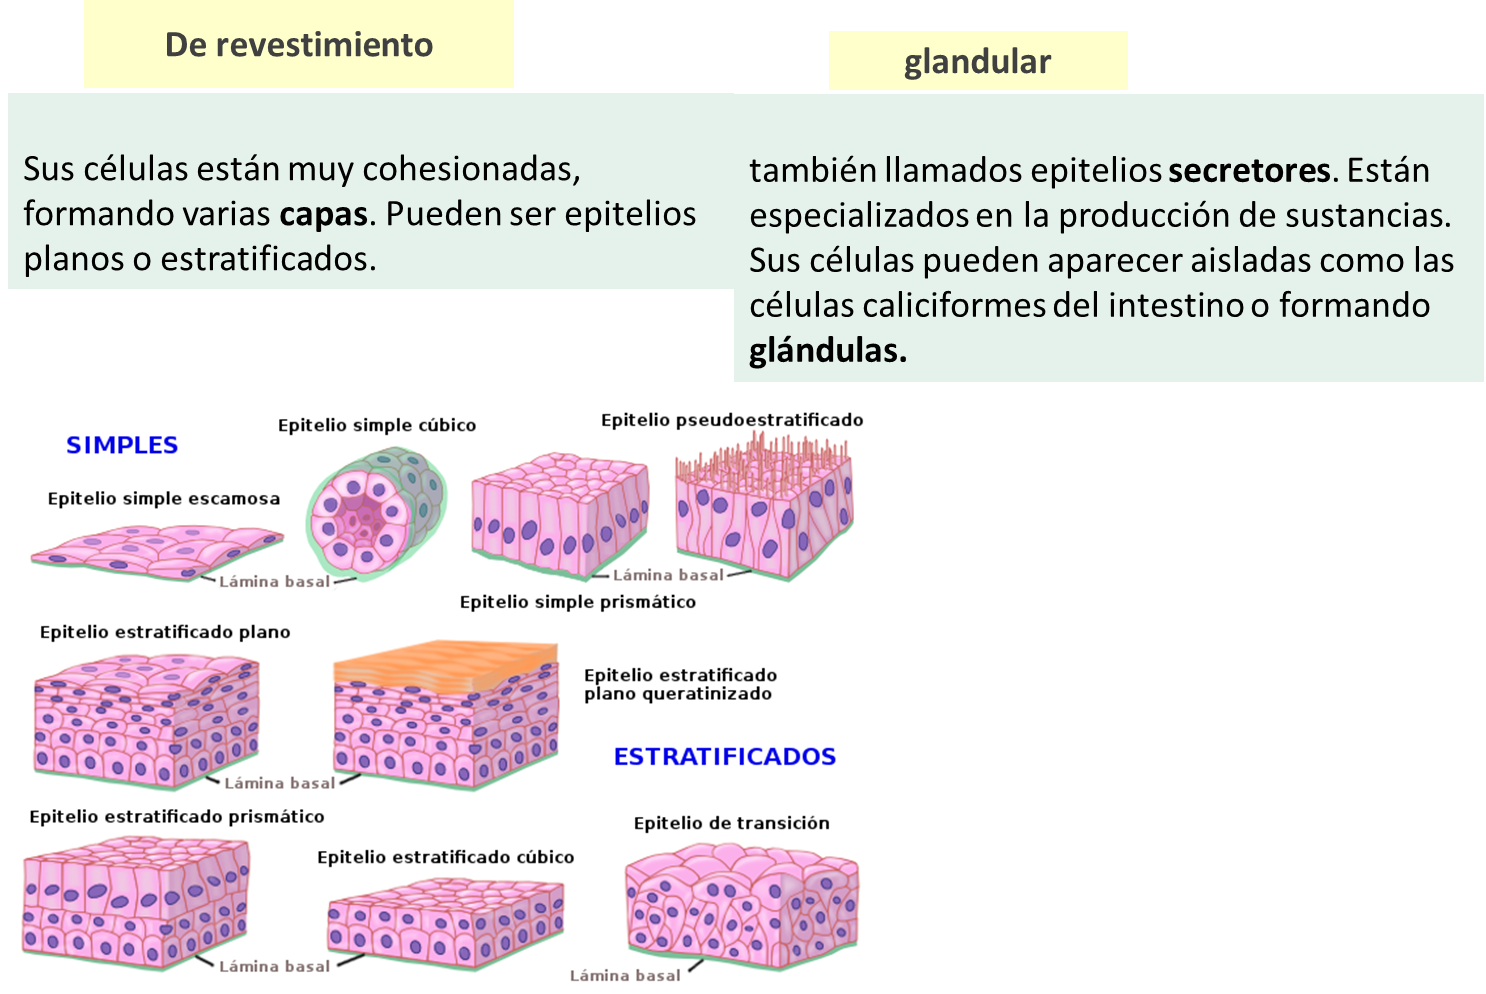 epitelial y glandular